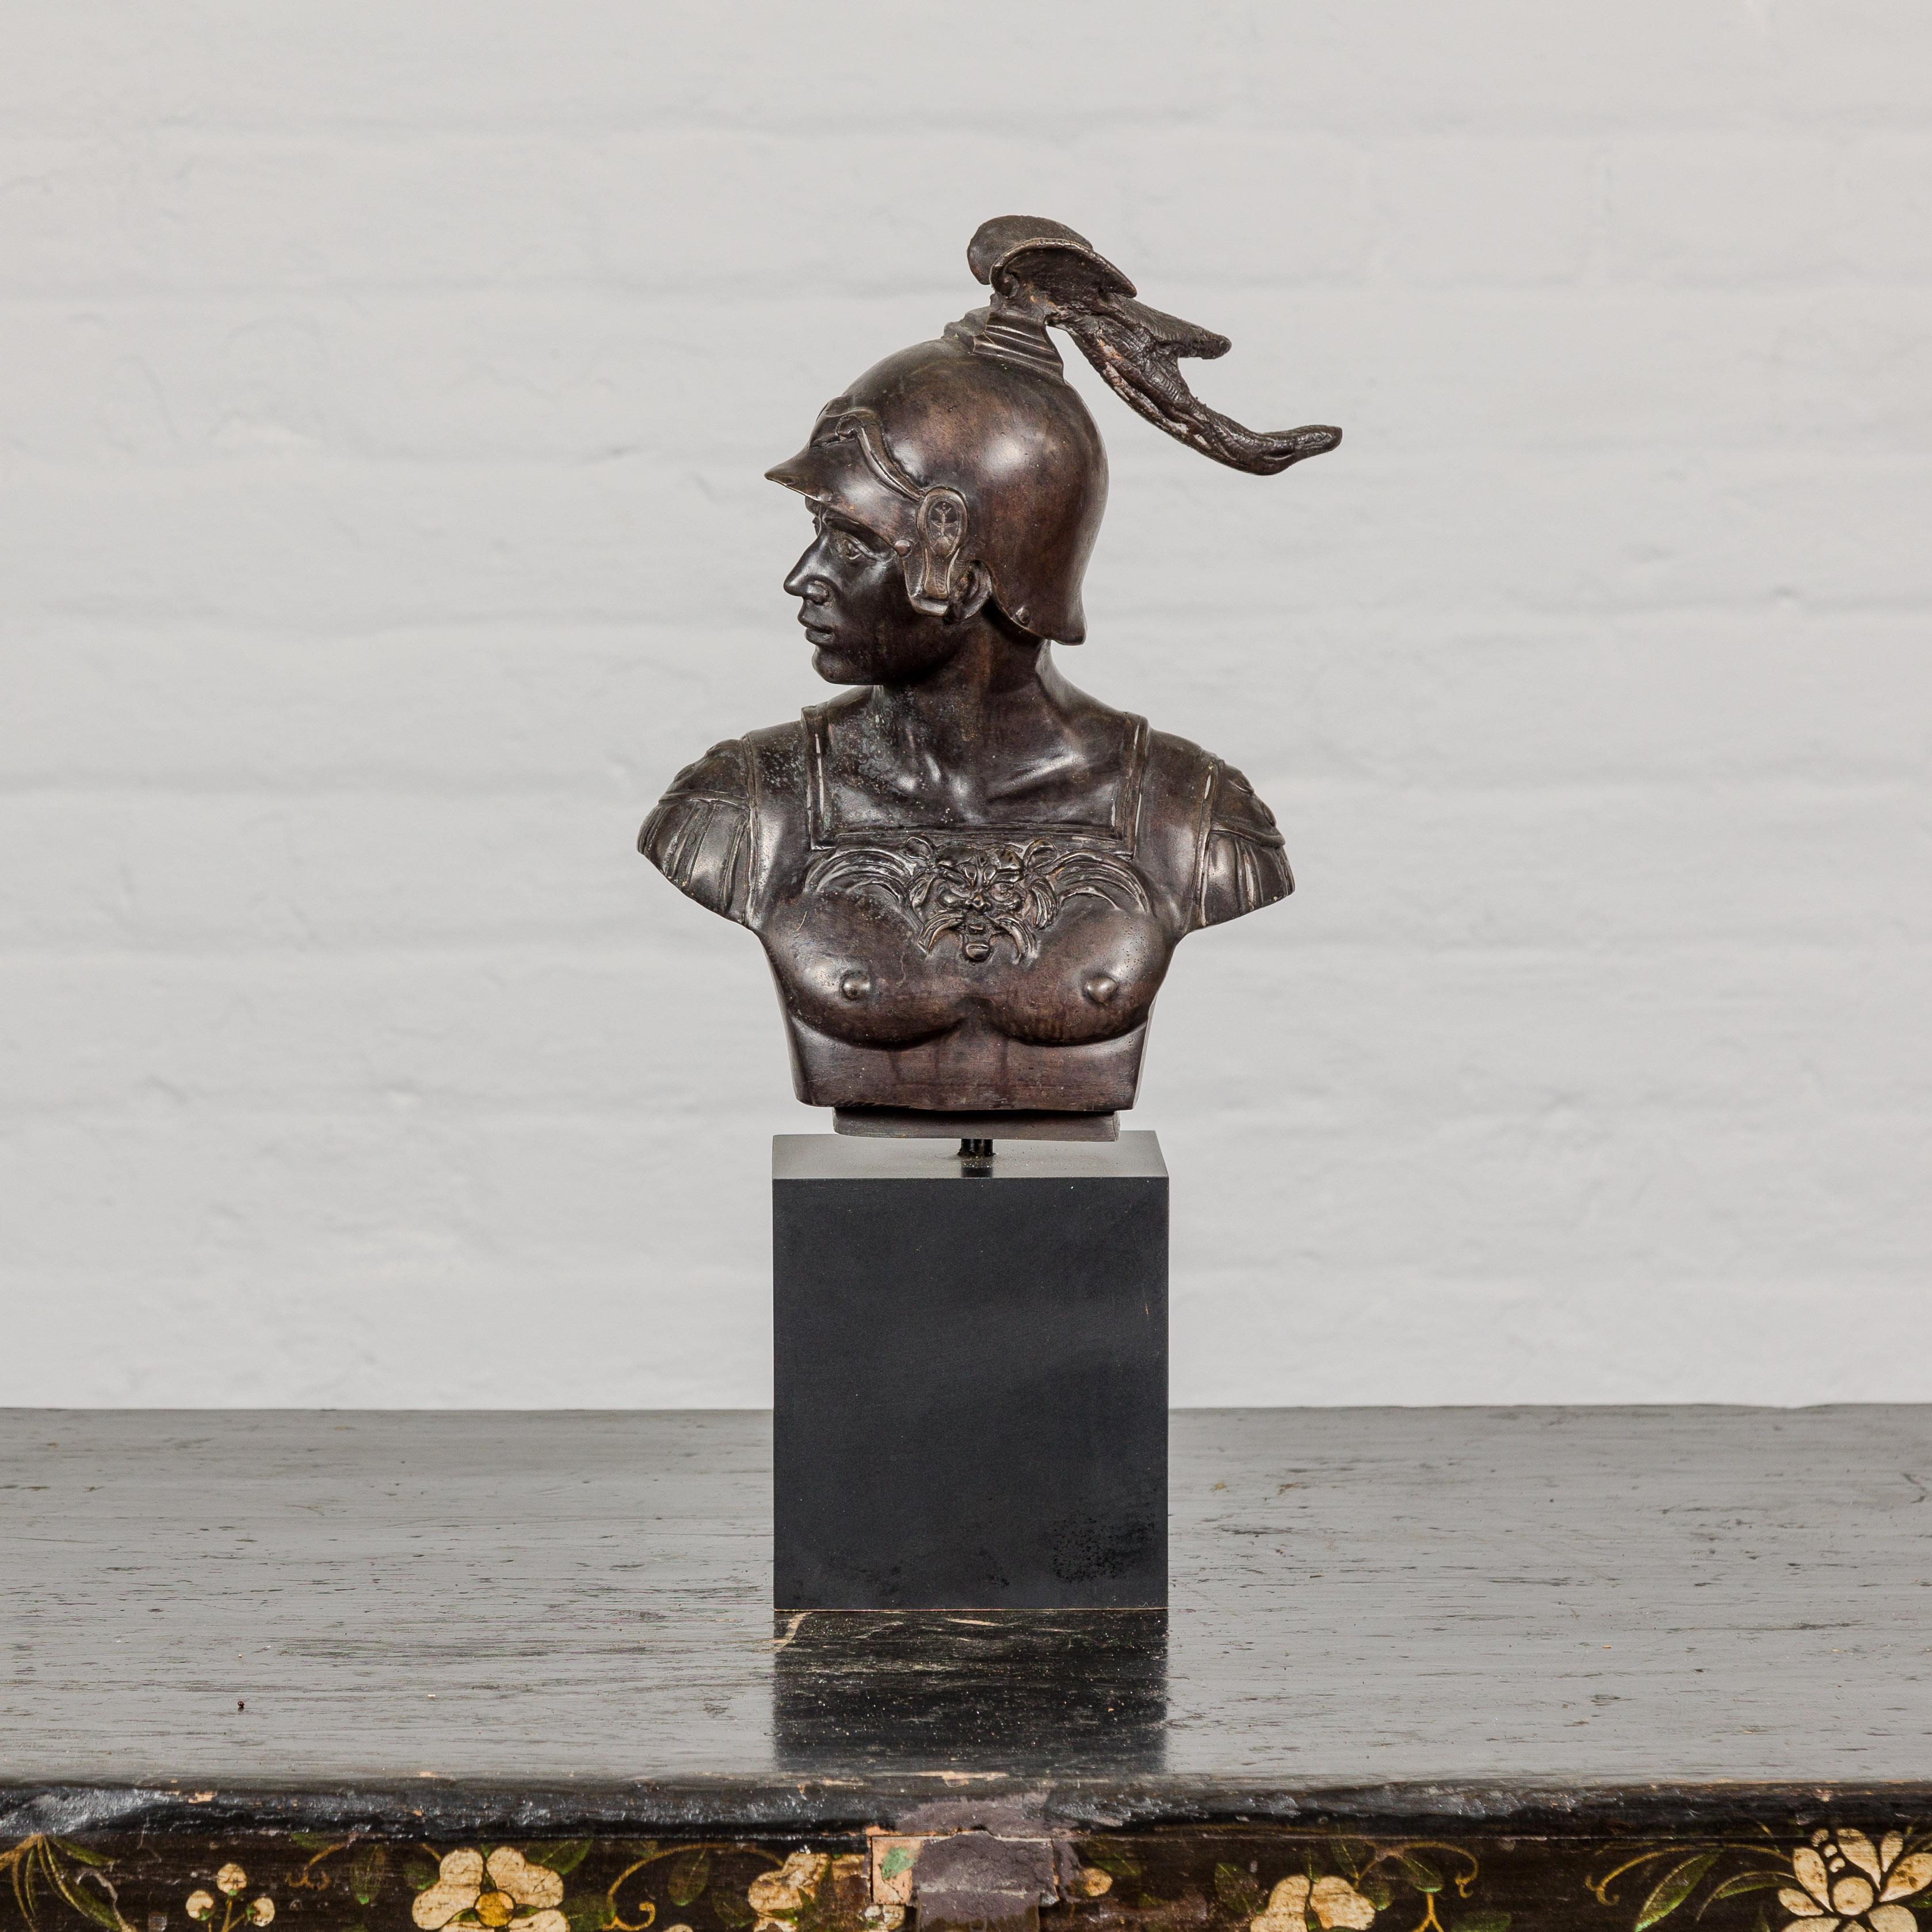 Buste en bronze de style gréco-romain représentant un soldat spartiate sur une base en bois noir. Ce buste en bronze de style gréco-romain, représentant magistralement un soldat spartiate, est une pièce remarquable qui respire la force et la beauté